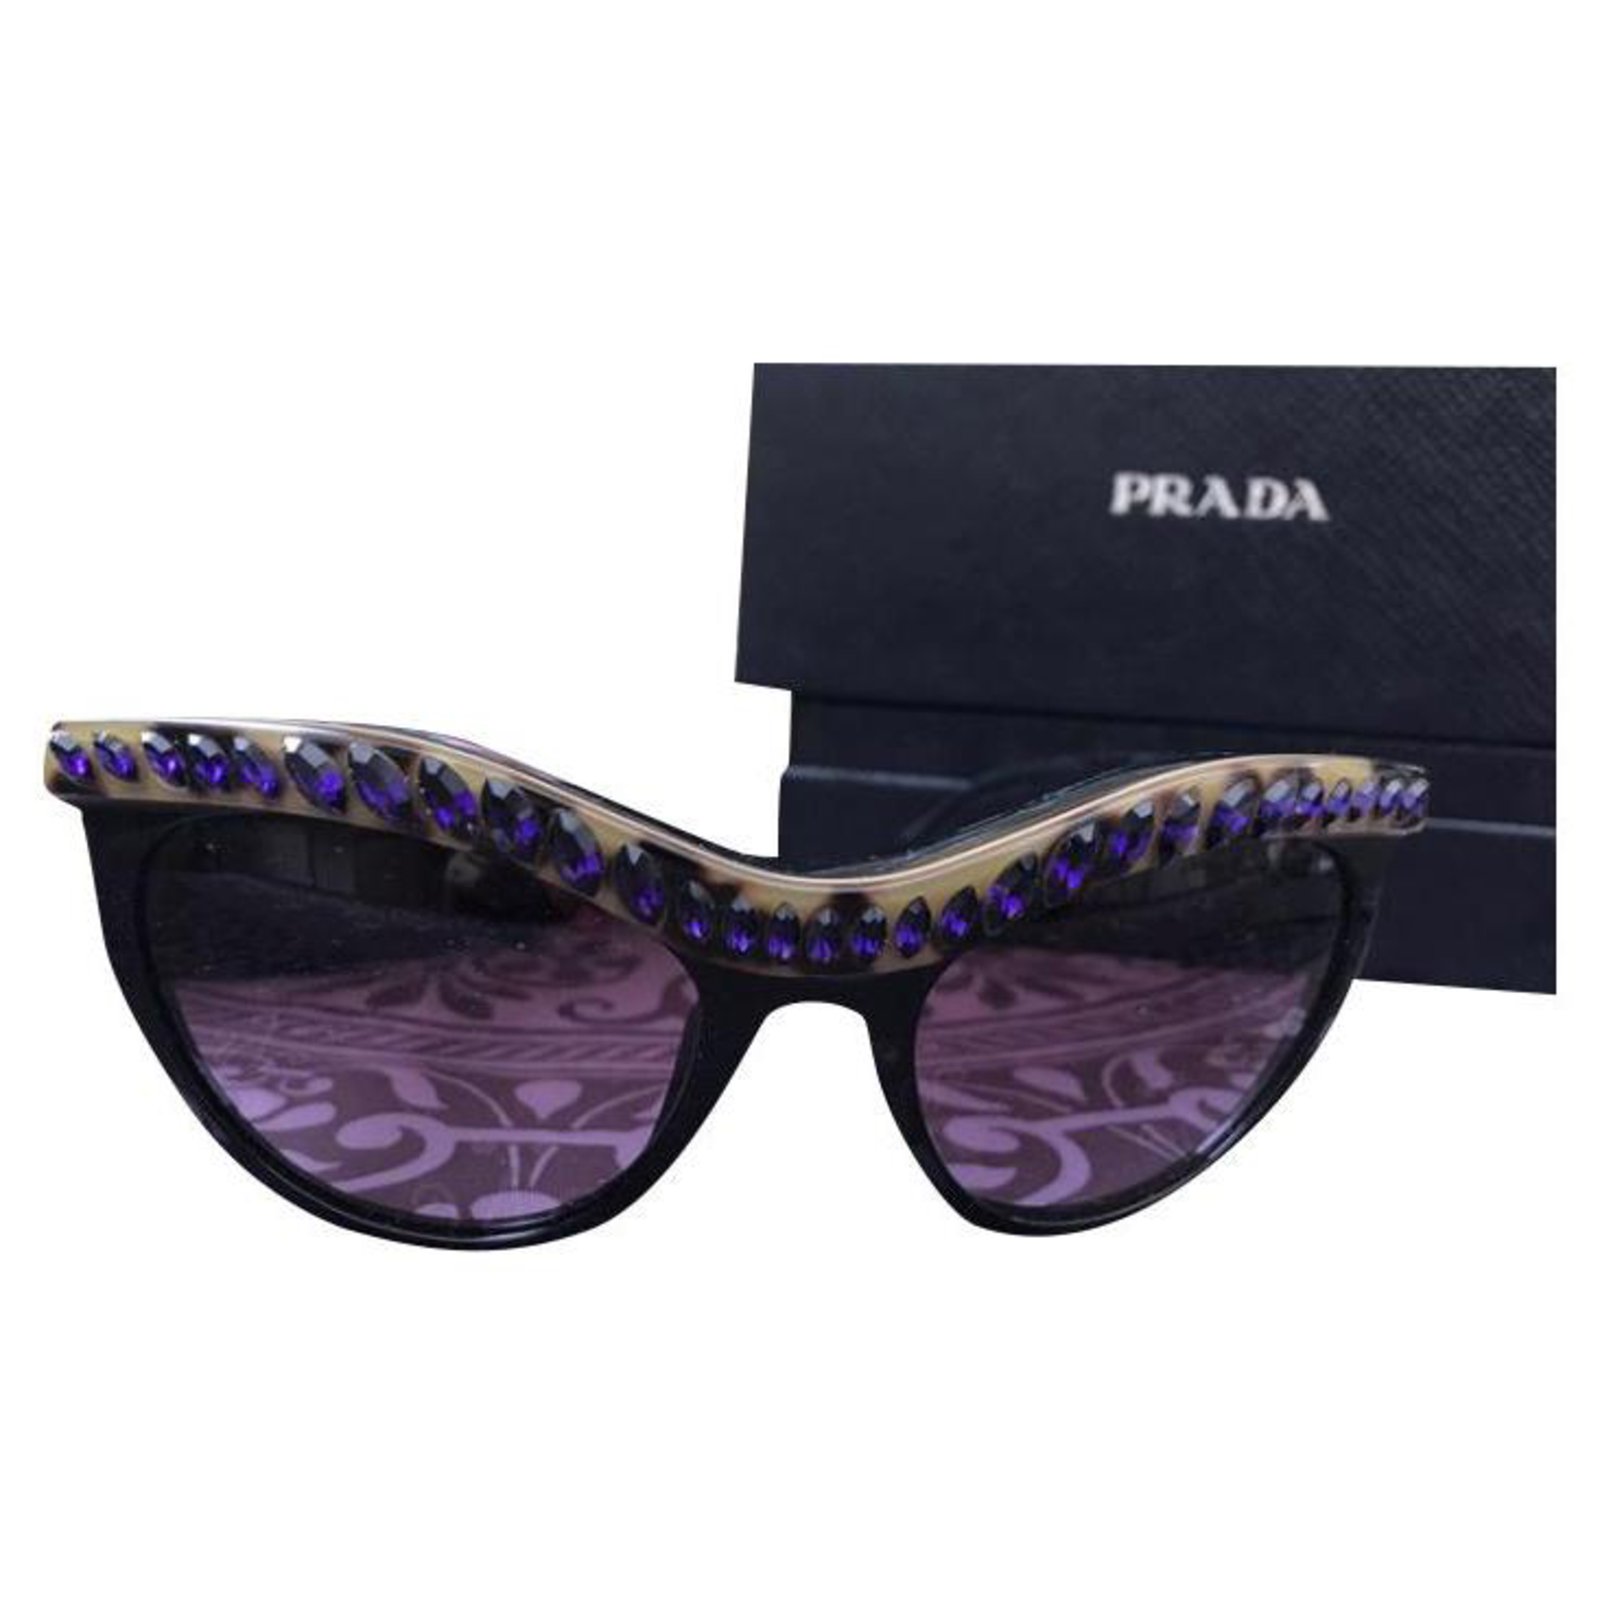 prada eyeglasses with swarovski crystals